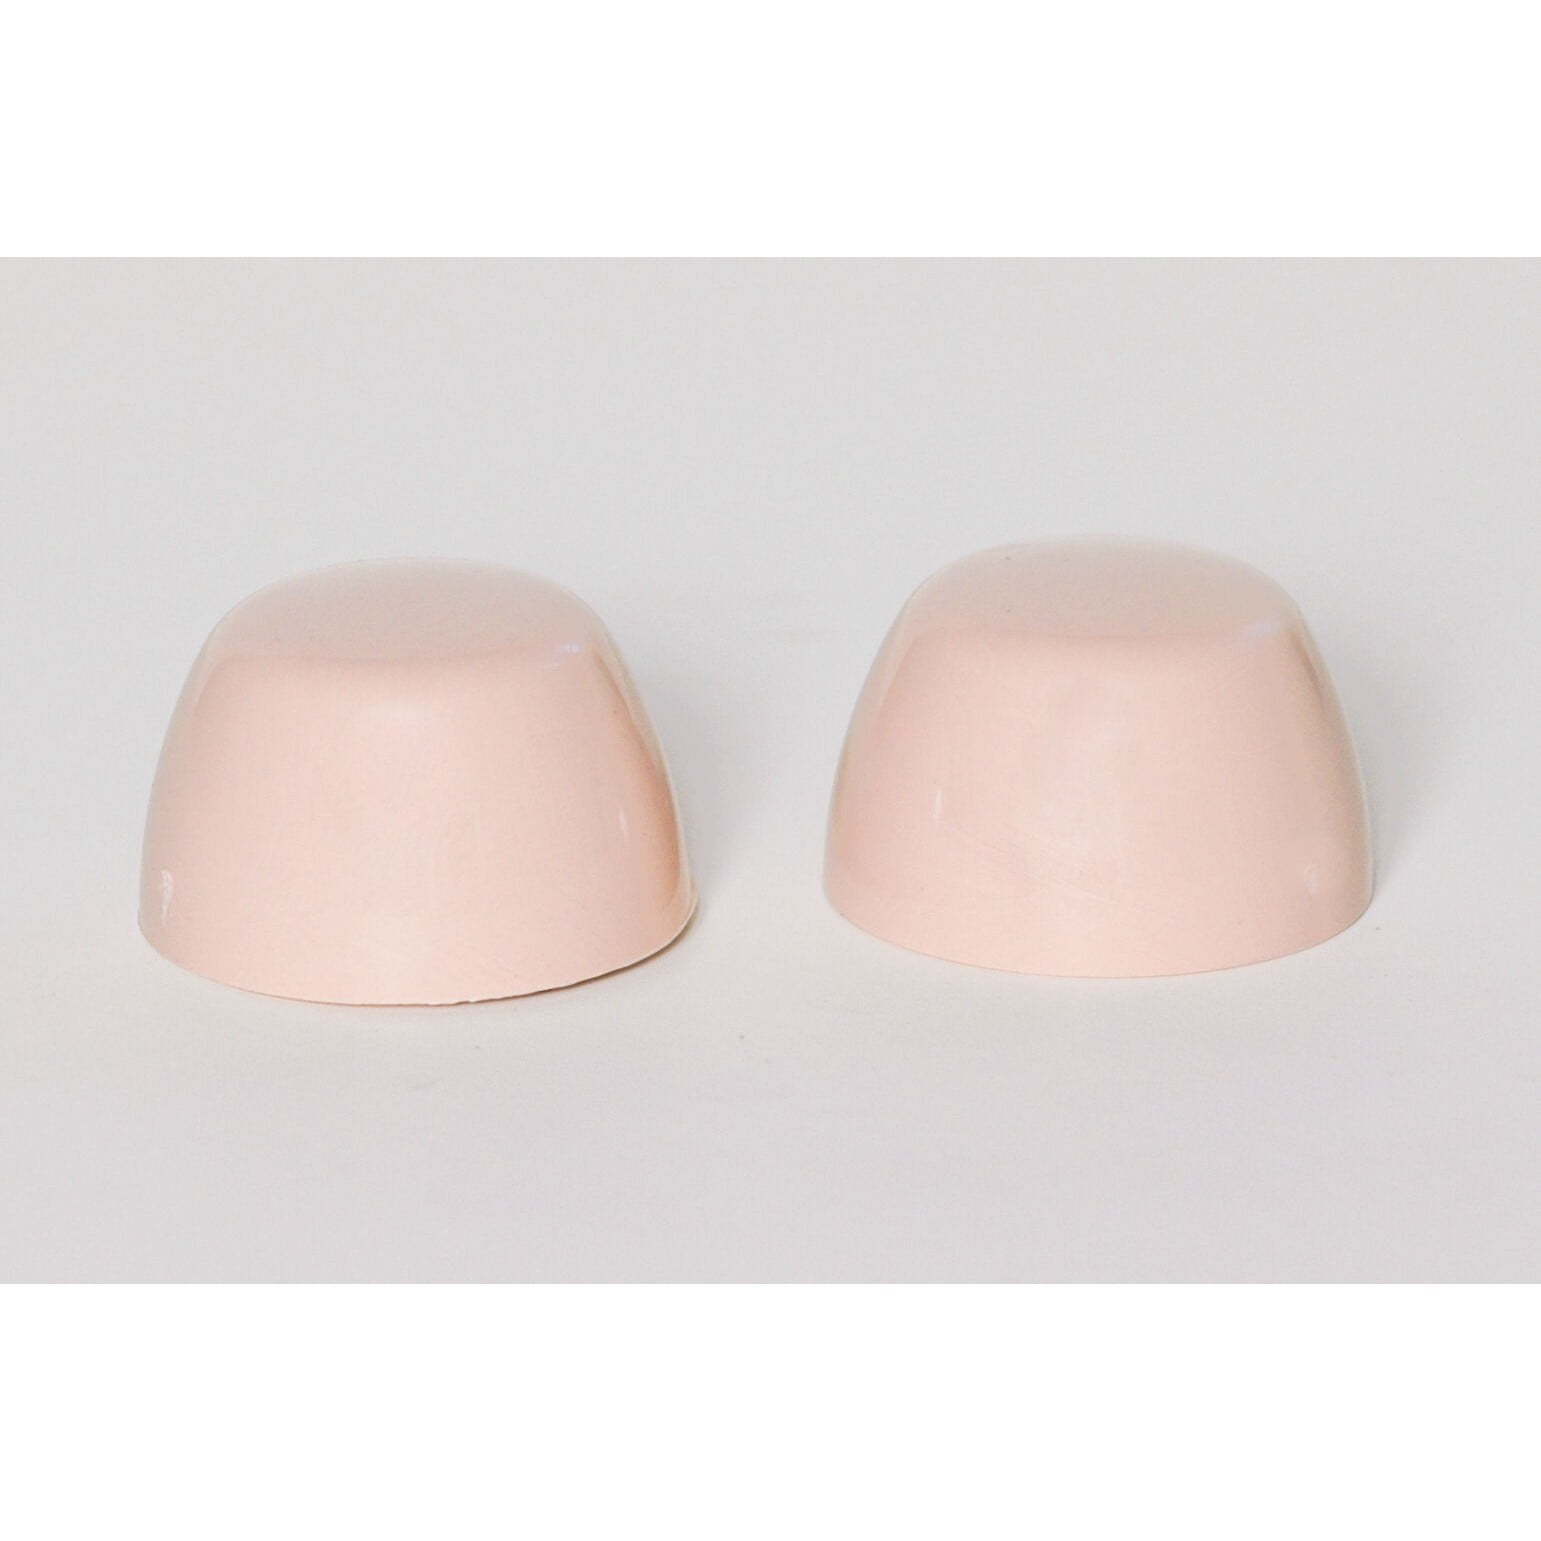 Case Replacement Ceramic Toilet Bolt Caps BERMUDA CORAL Set of 2 